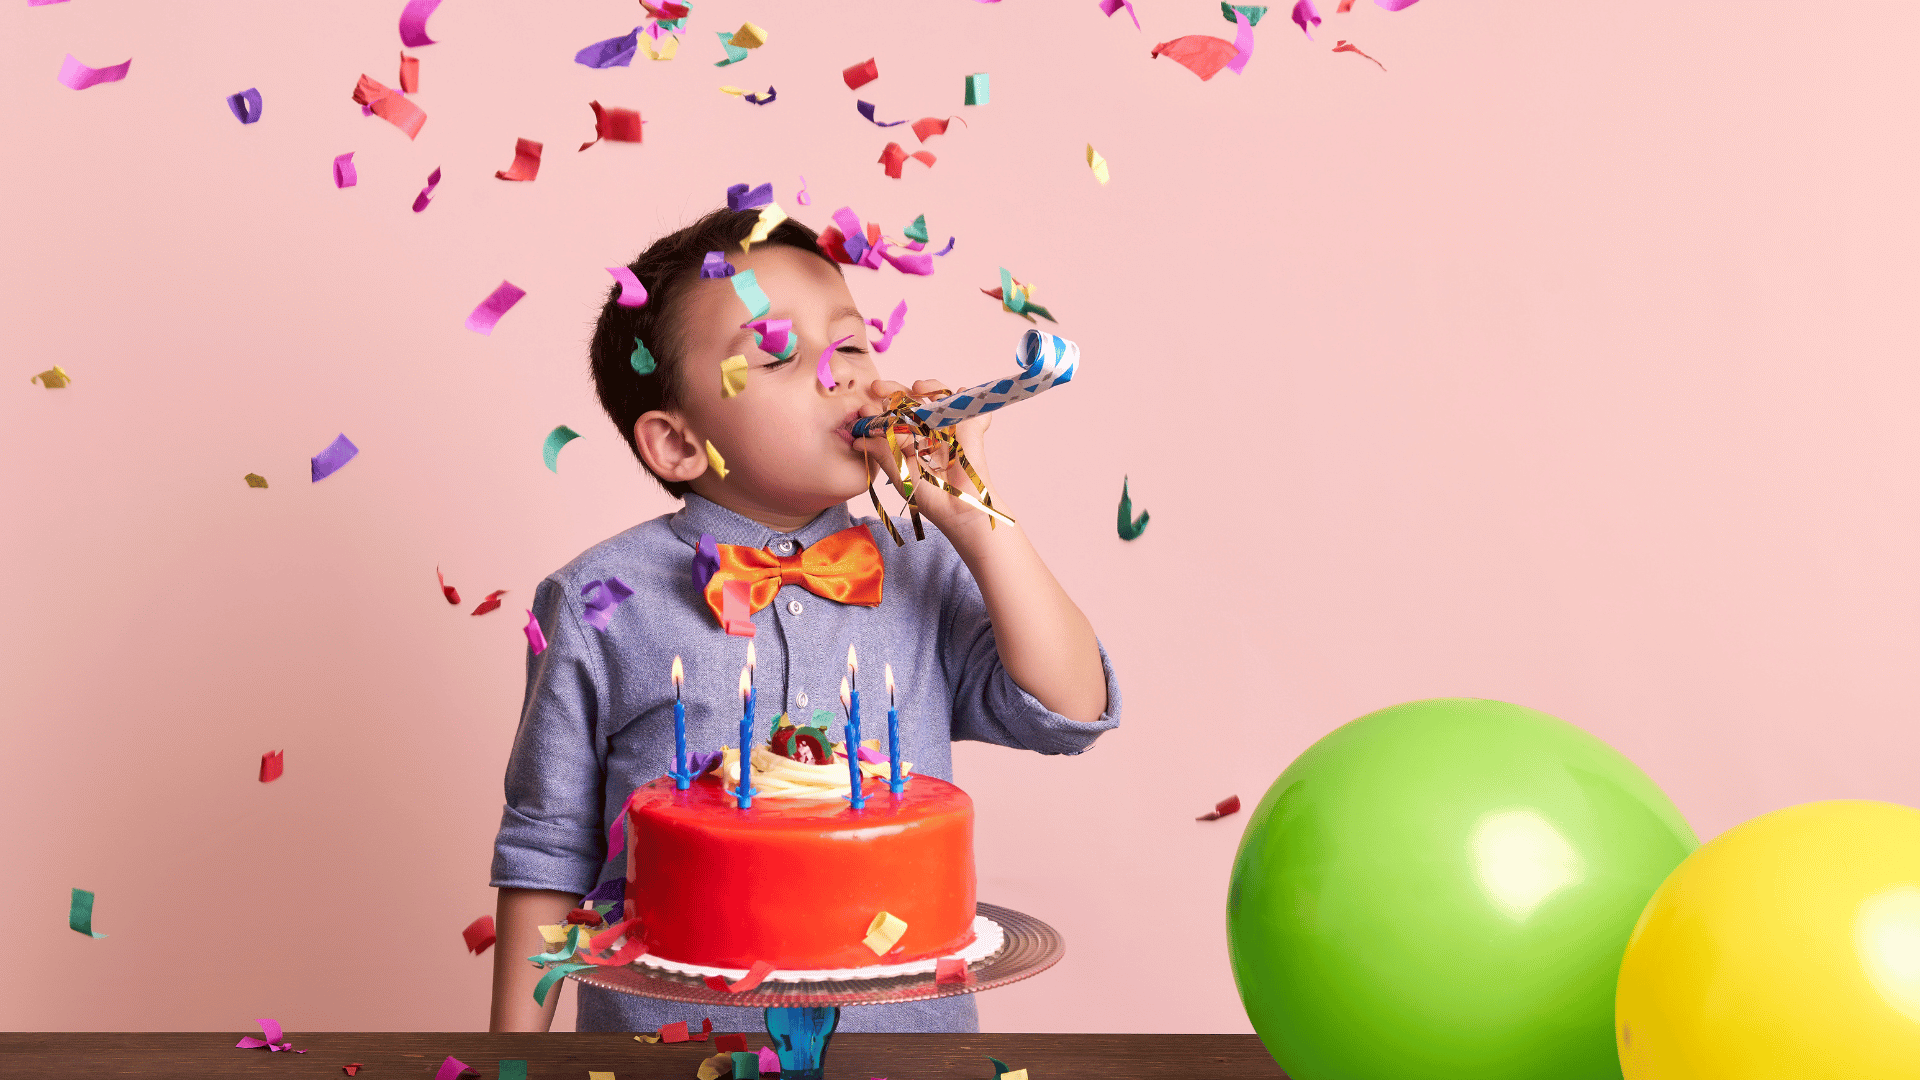 Menino criança assoprando uma língua de sogra próximo de seu bolo de aniversário em um fundo com balões e confetes de festa.